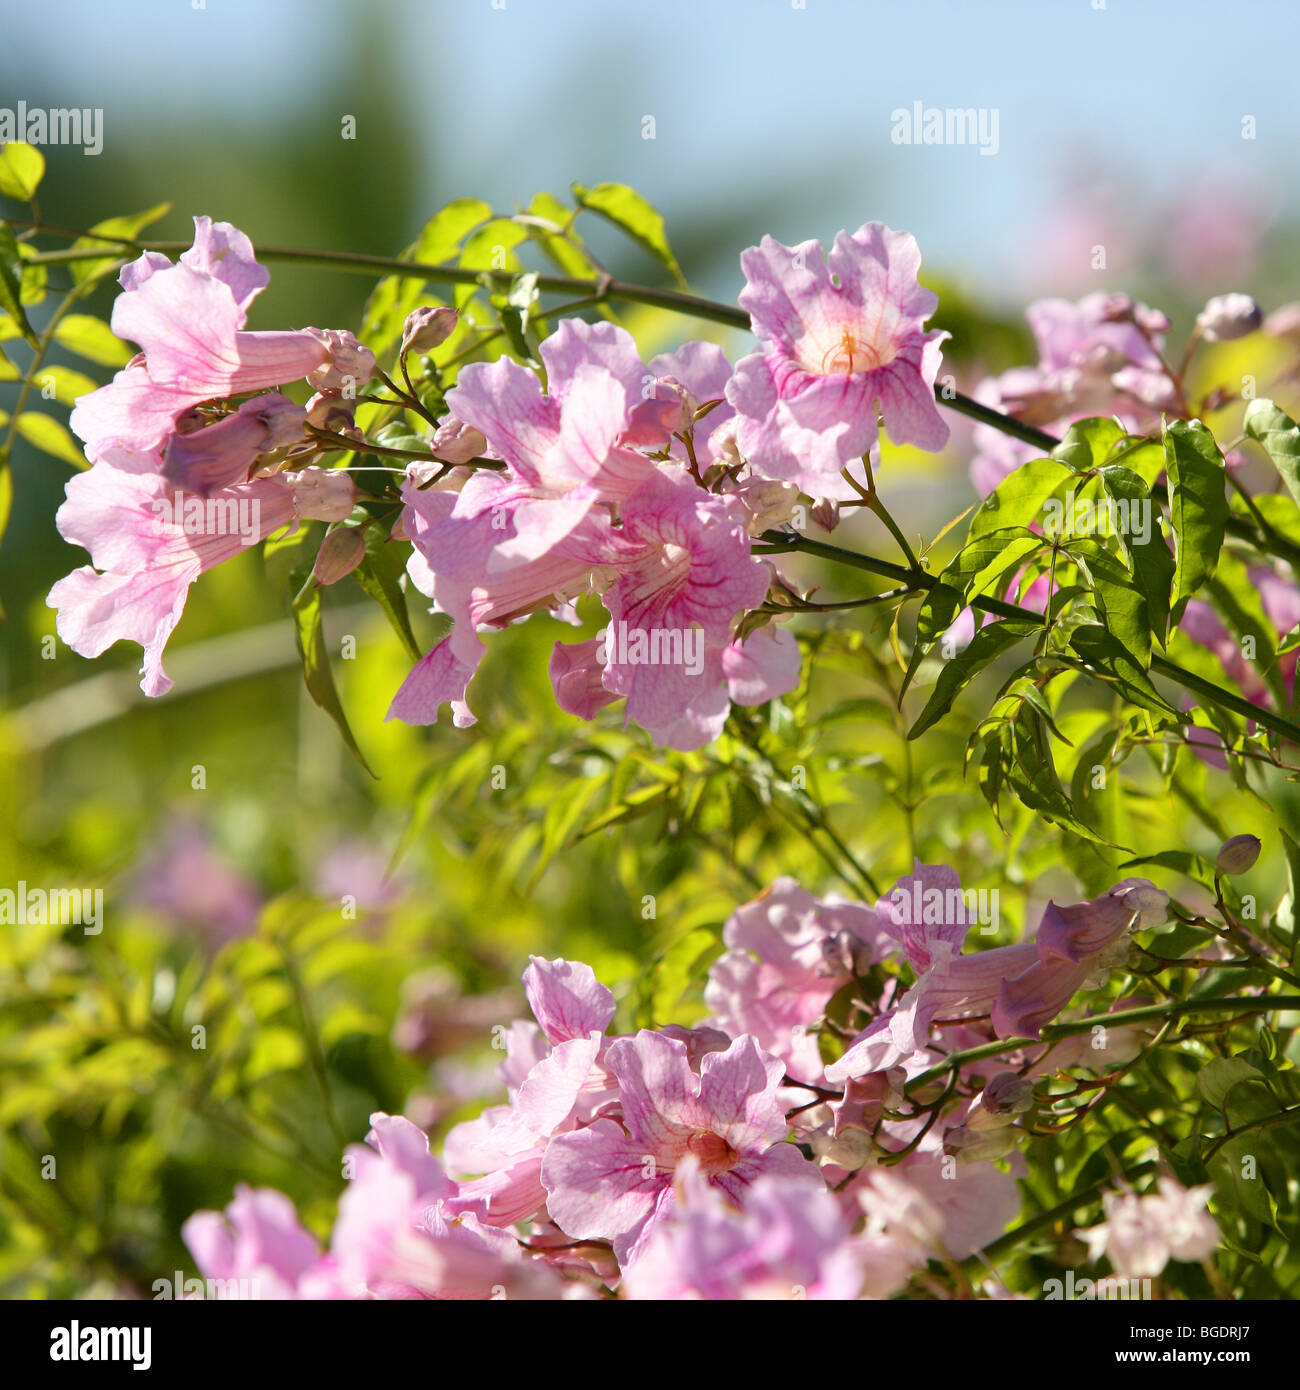 Asarina Erubescens. Escrofulariaceas. Pink autumn flowers Stock Photo